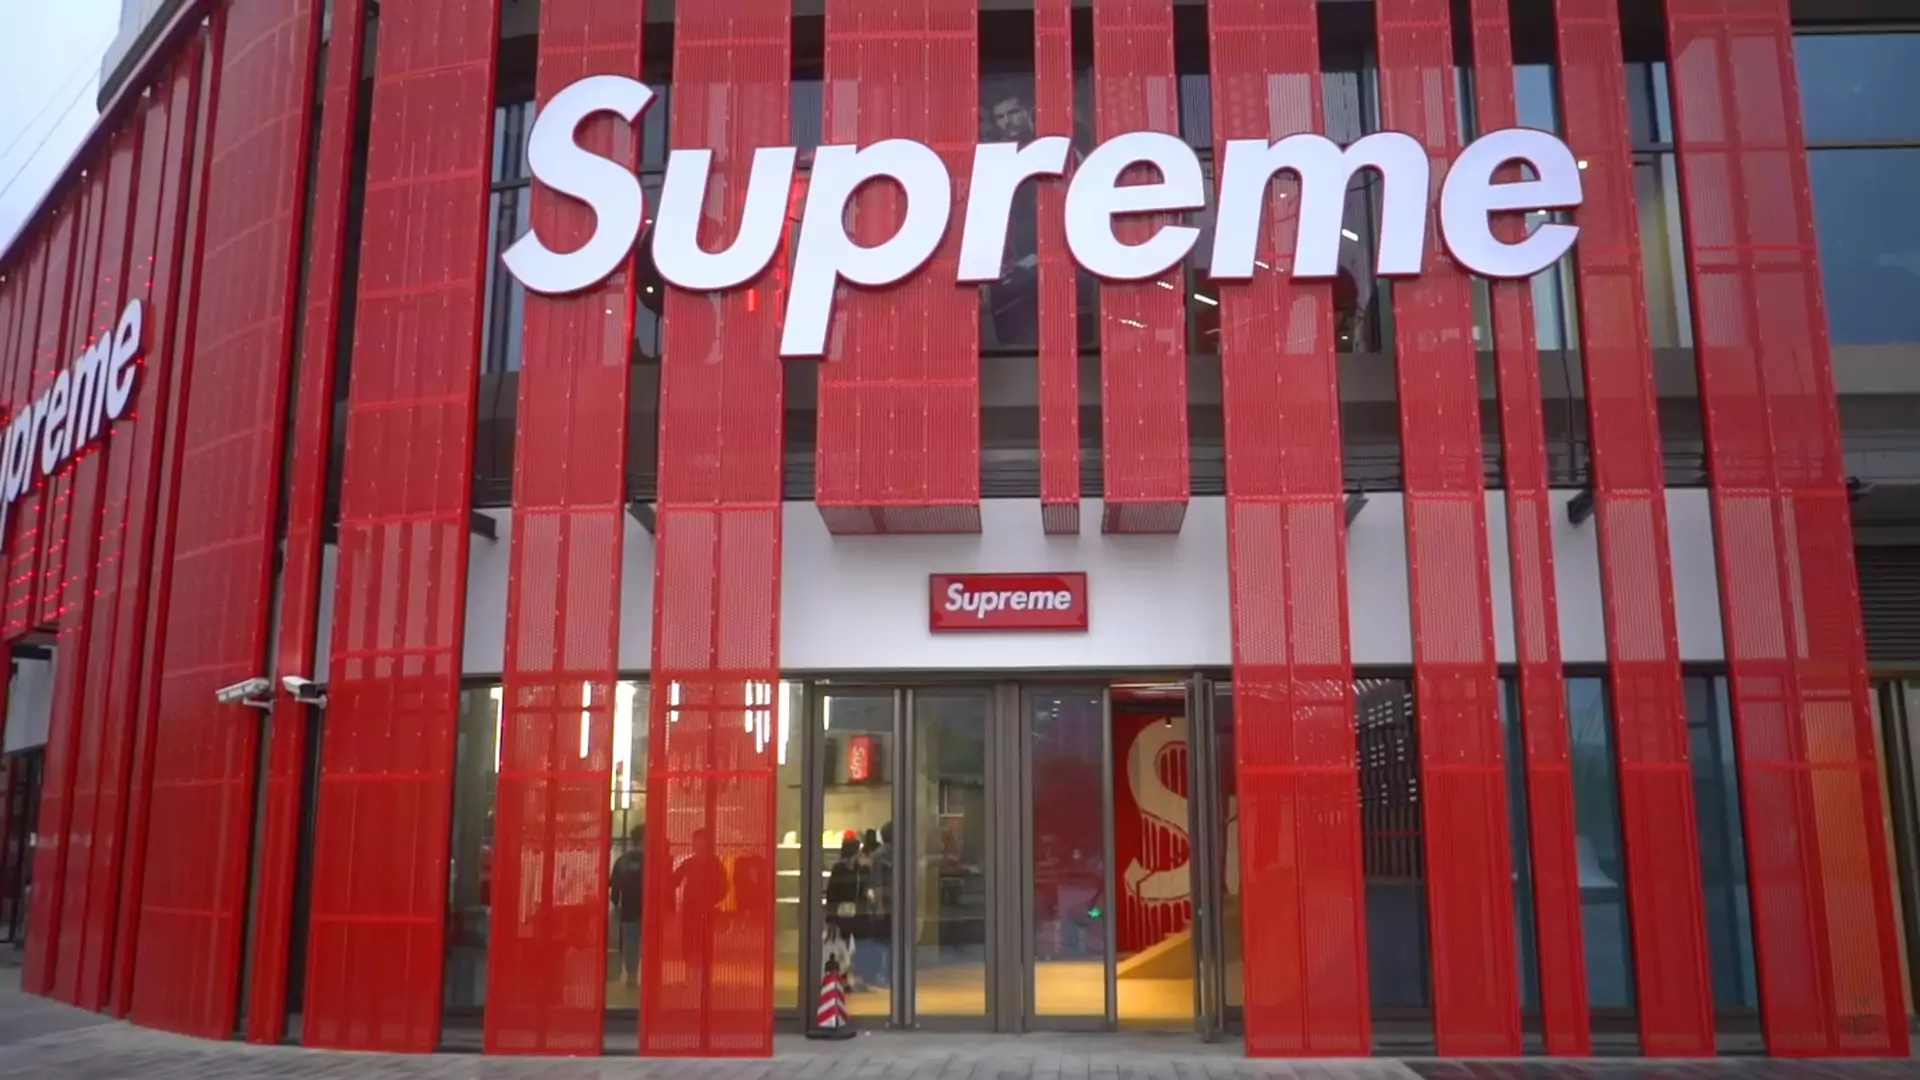 Fejkowe sklepy Supreme zalewają świat. Jak to możliwe, że są i będą legalne?